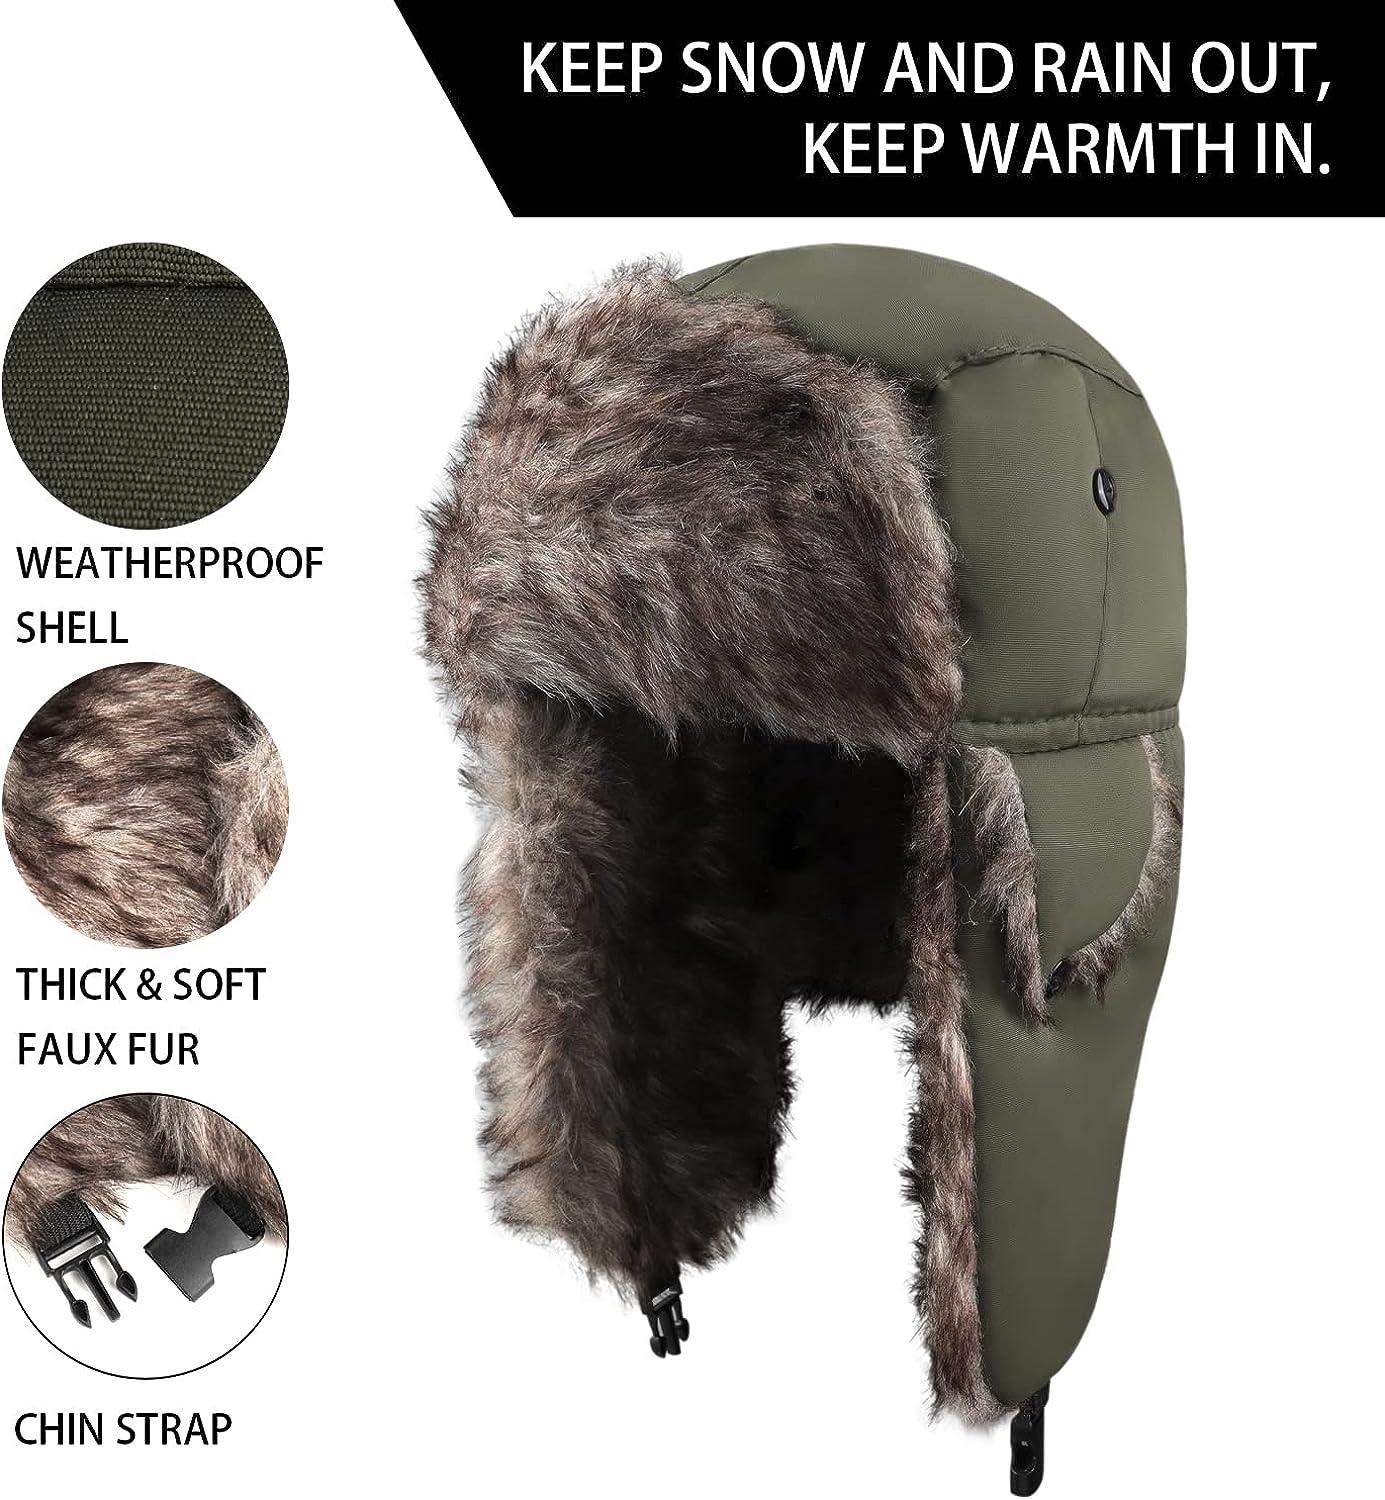 Taslan Ushanka Trapper Hat - Faux Fur Lined Russian Style Warm